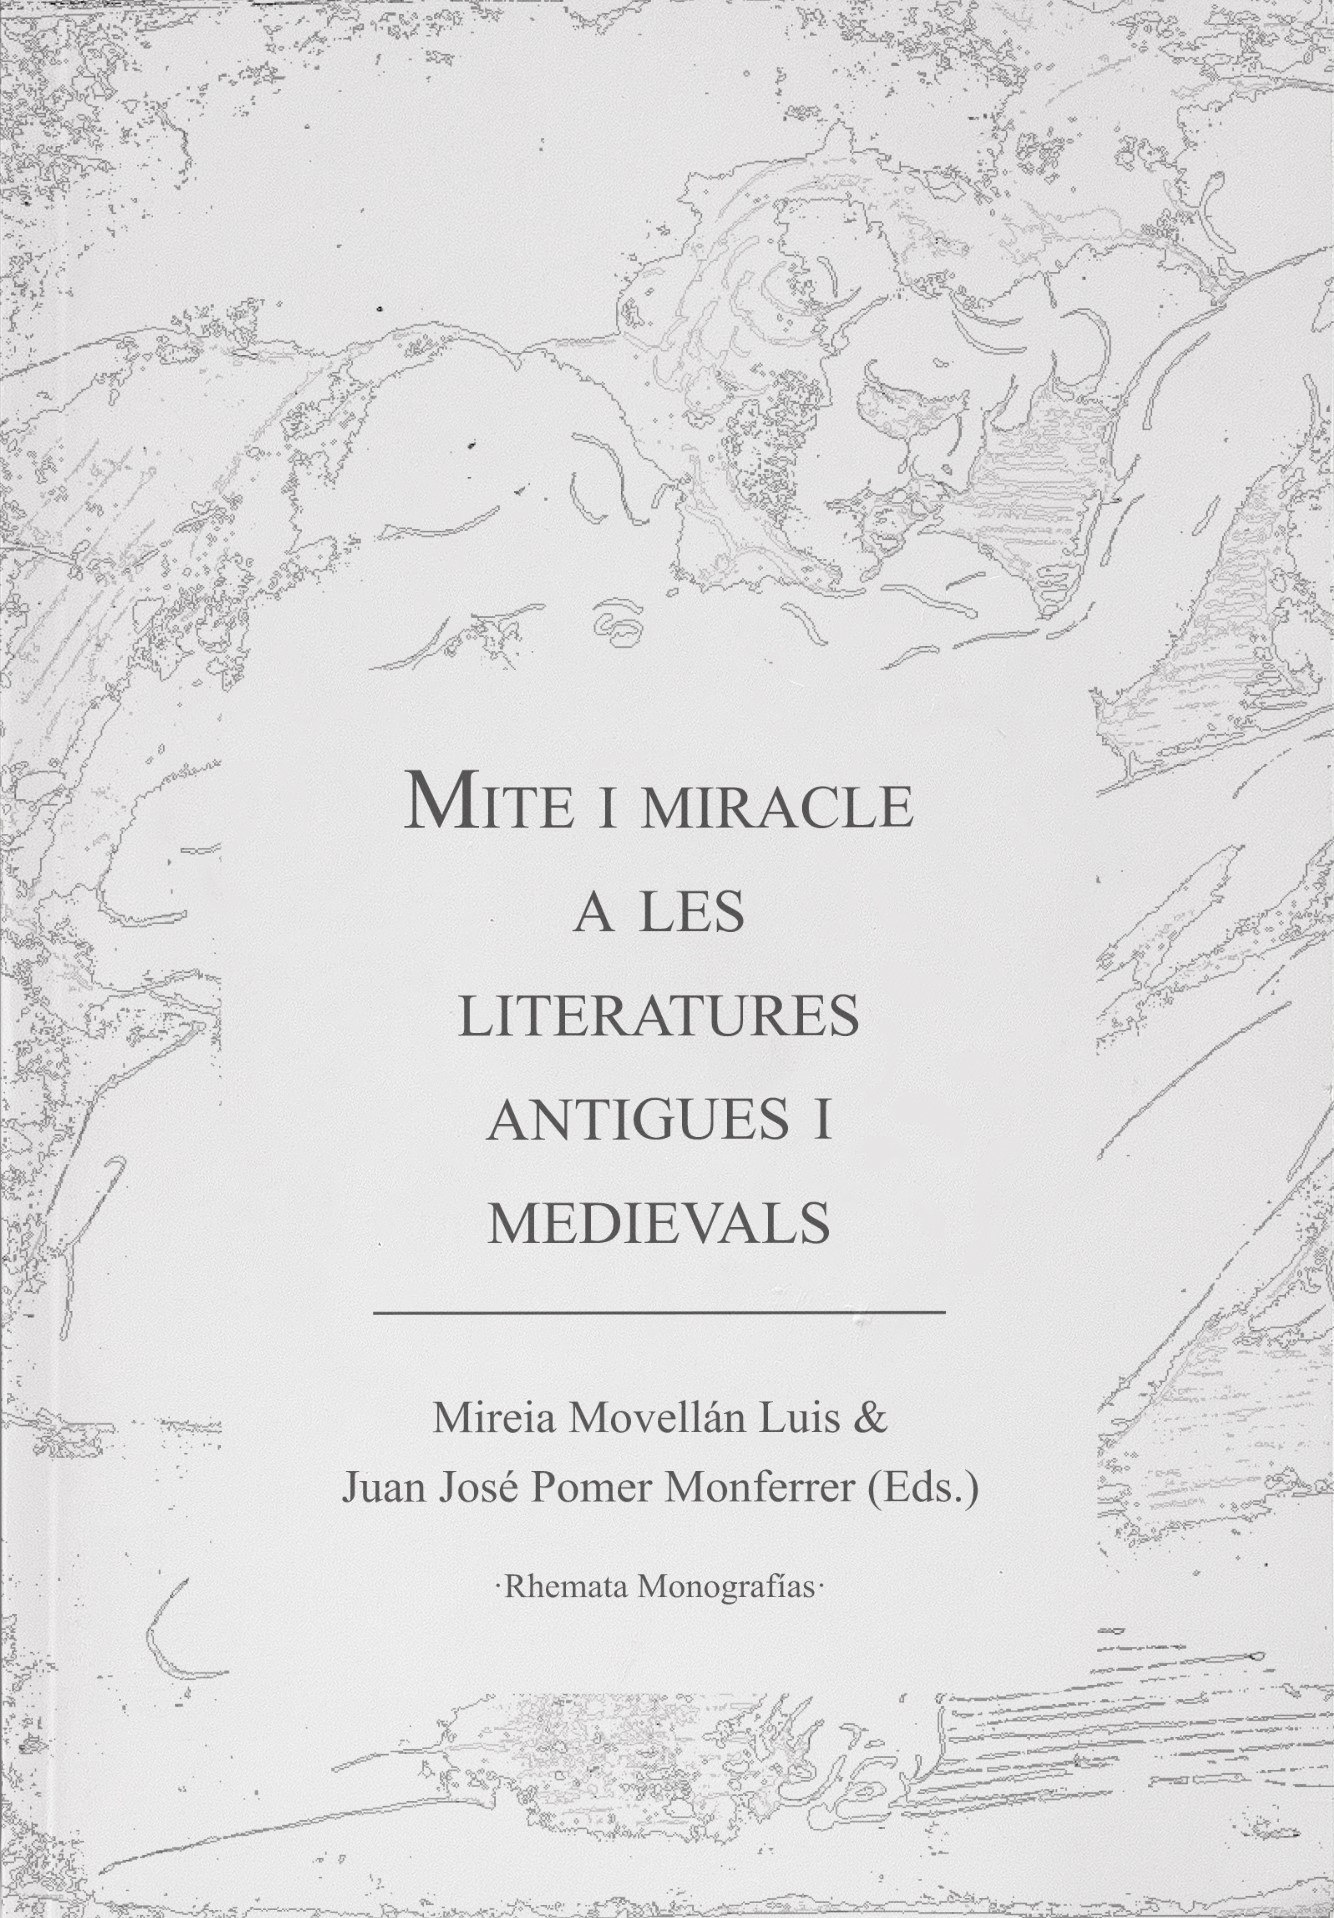 Mite i miracle a les literatures antigues i medievals